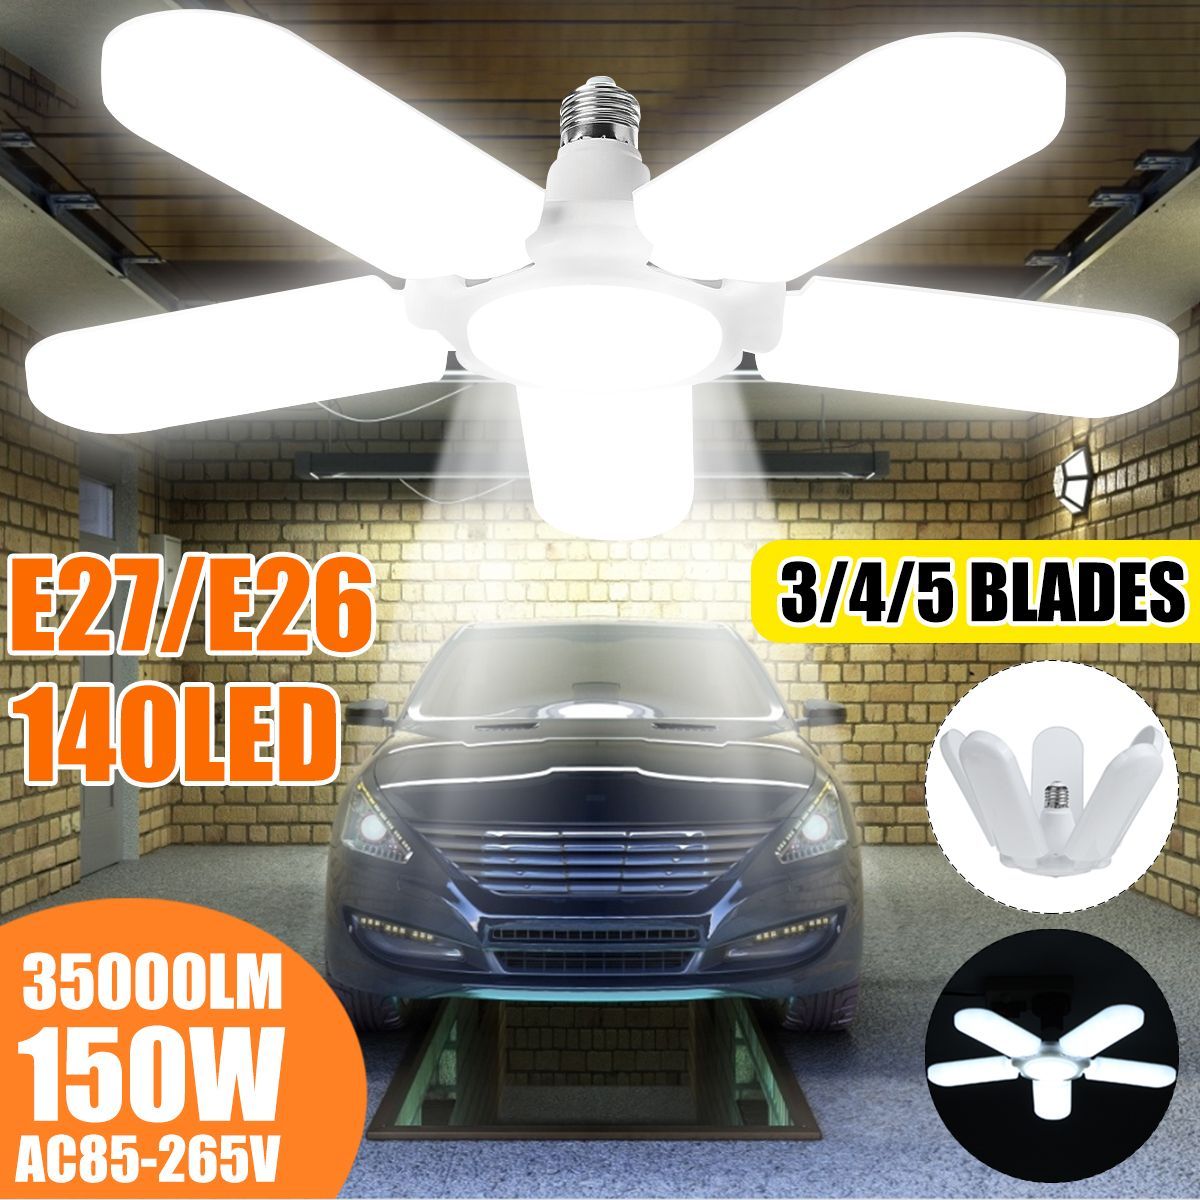 E27-Adjustable-23451-Blades-Deformable-LED-Garage-Light-Bulb-Workshop-Ceiling-Lamp-for-Indoor-AC85-2-1629058